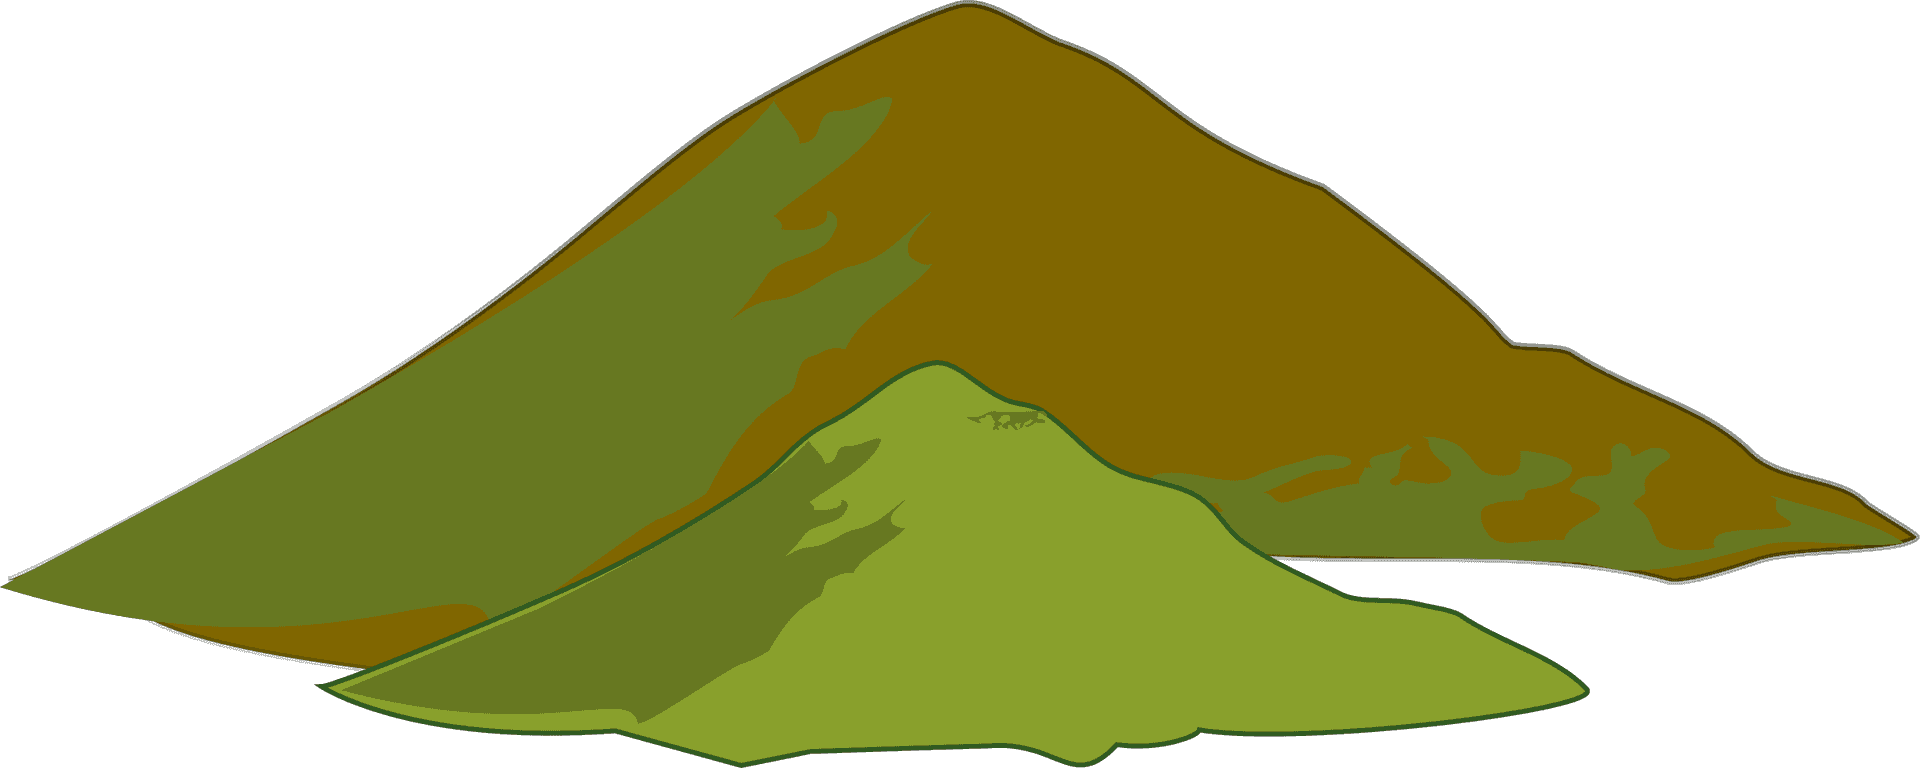 Stylized Mountain Range Illustration PNG image